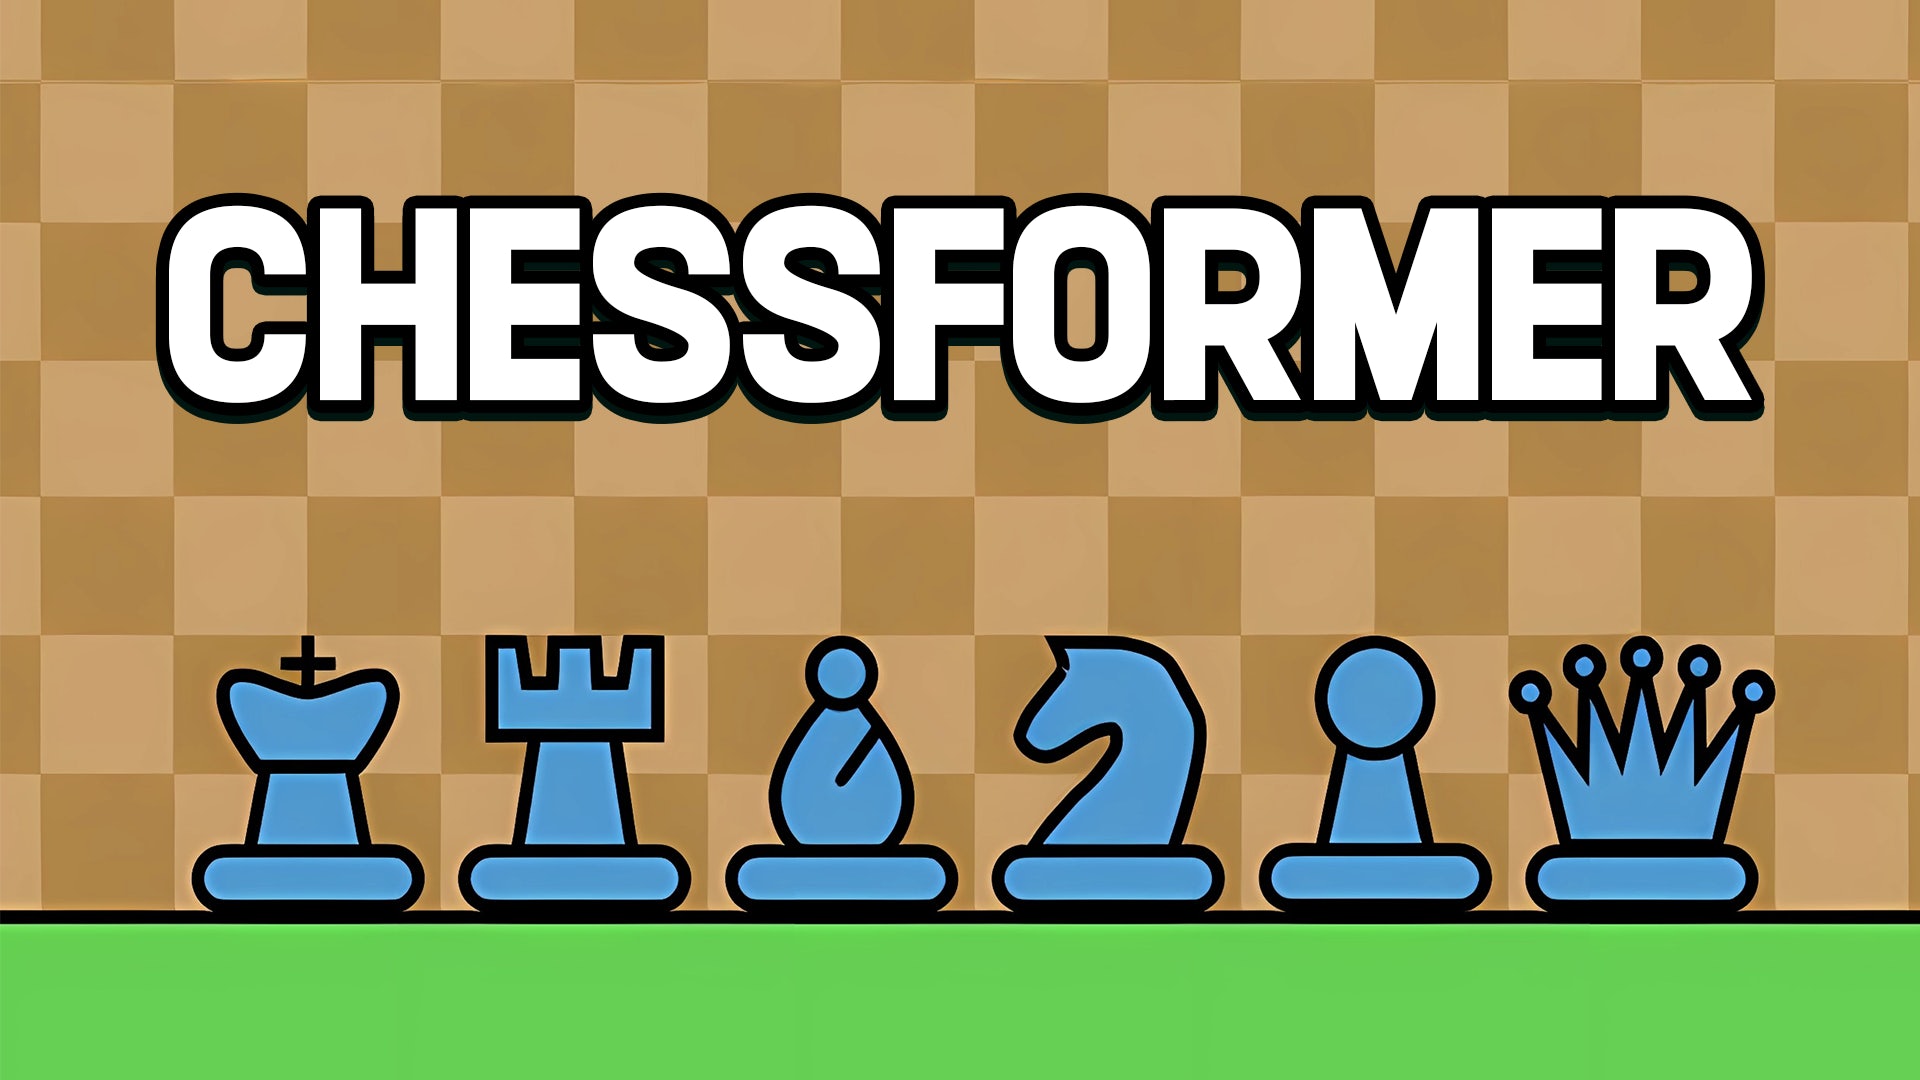 Chessformer